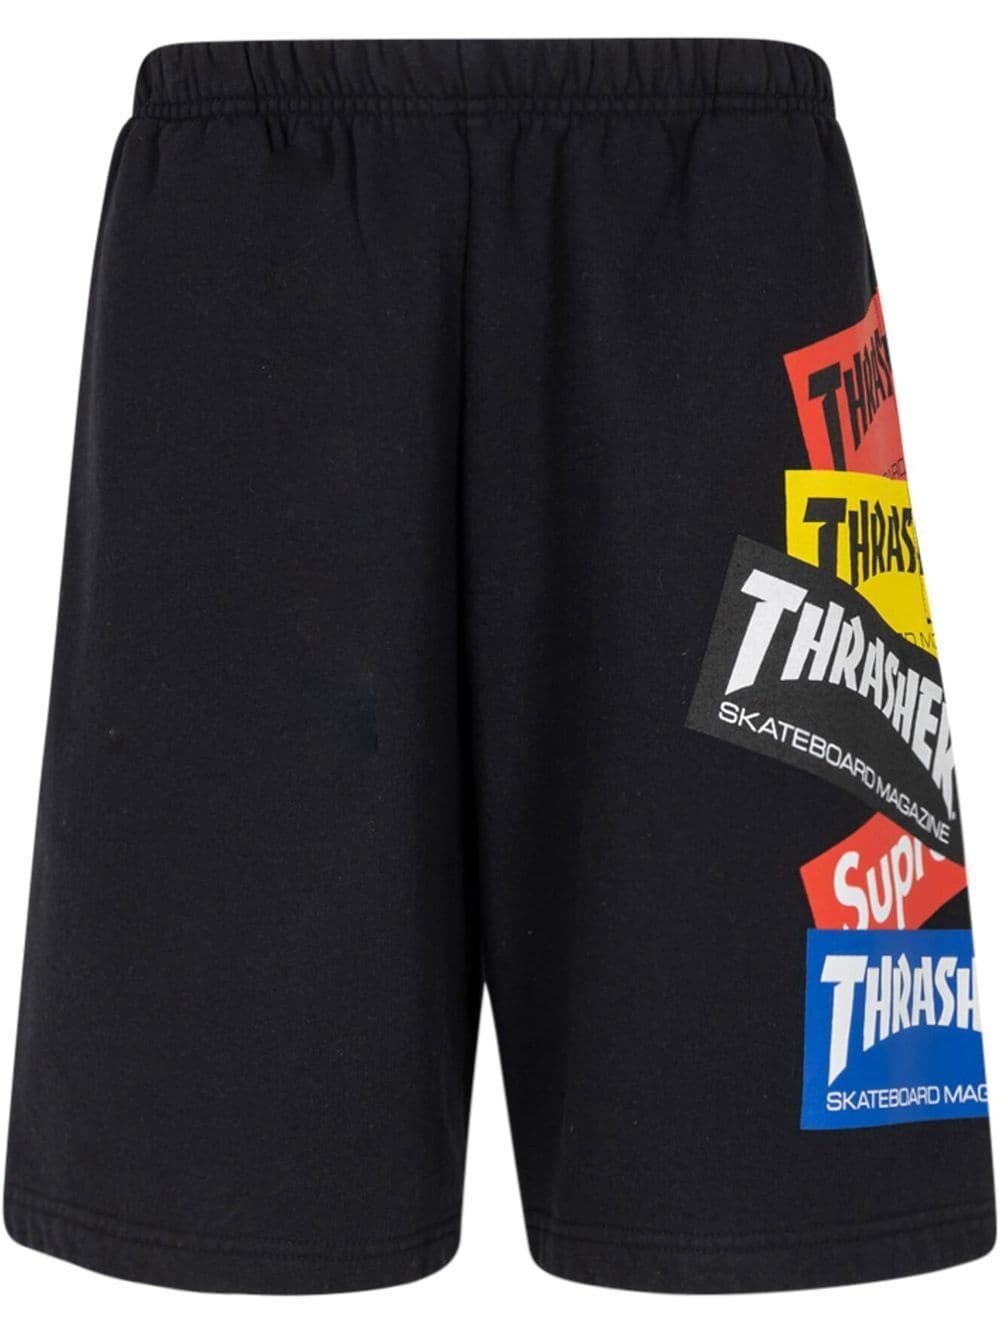 x Thrasher multi logo track shorts - 1